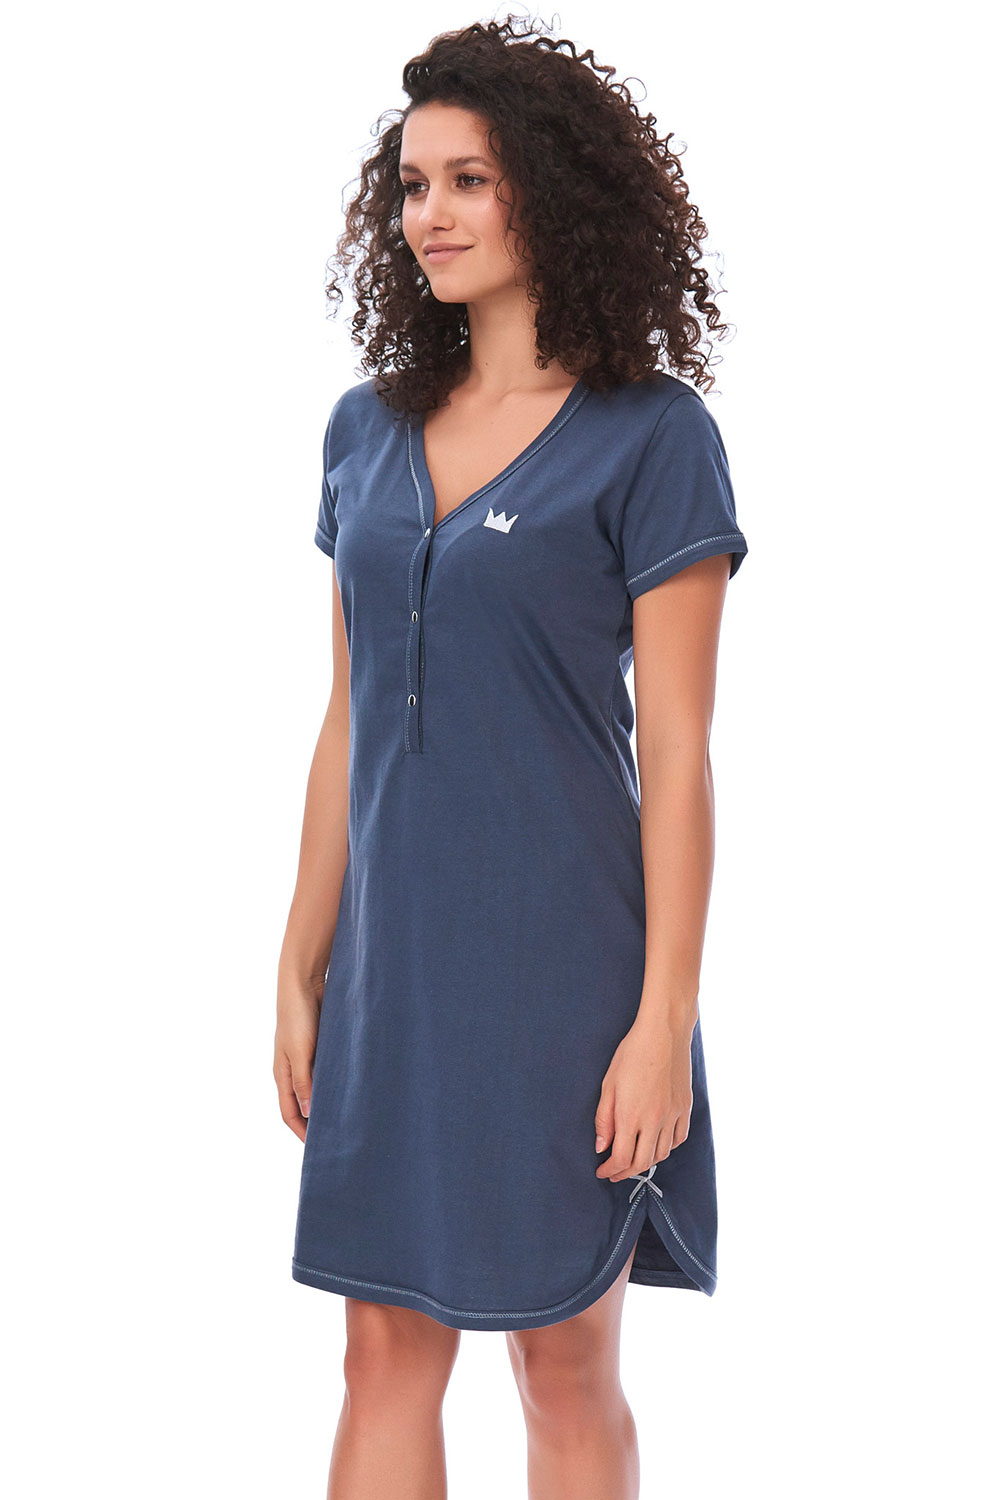 Dn-nightwear TCB.9505 - koszulka ciążowa oraz do karmienia - Dobranocka